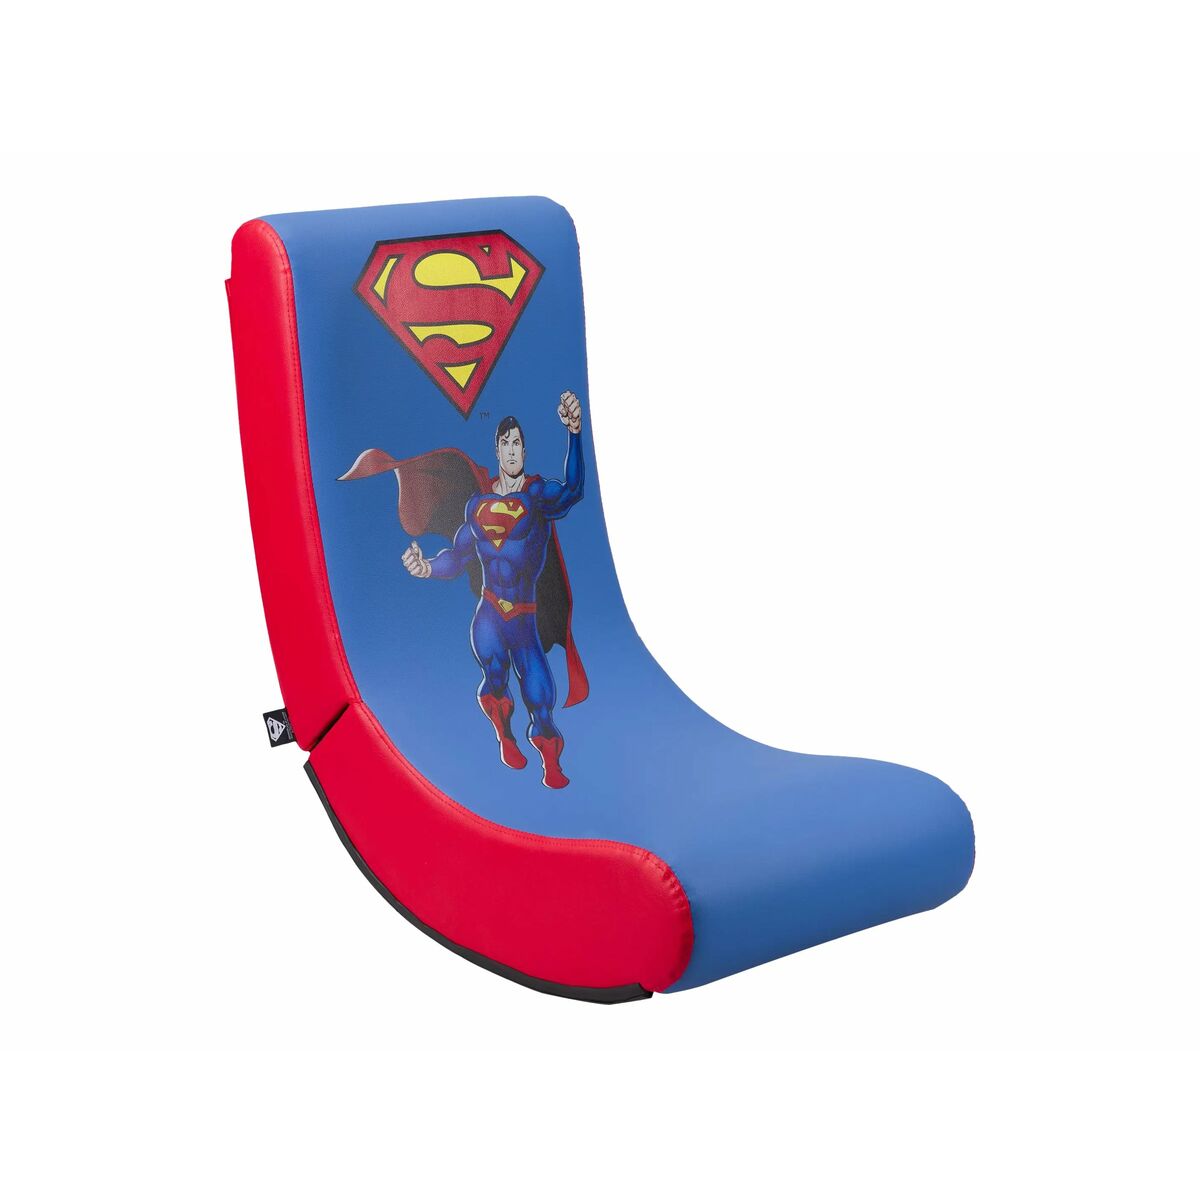 Osta tuote Pelituoli Subsonic Comics Superman Sininen verkkokaupastamme Korhone: Tietokoneet & Elektroniikka 10% alennuksella koodilla KORHONE